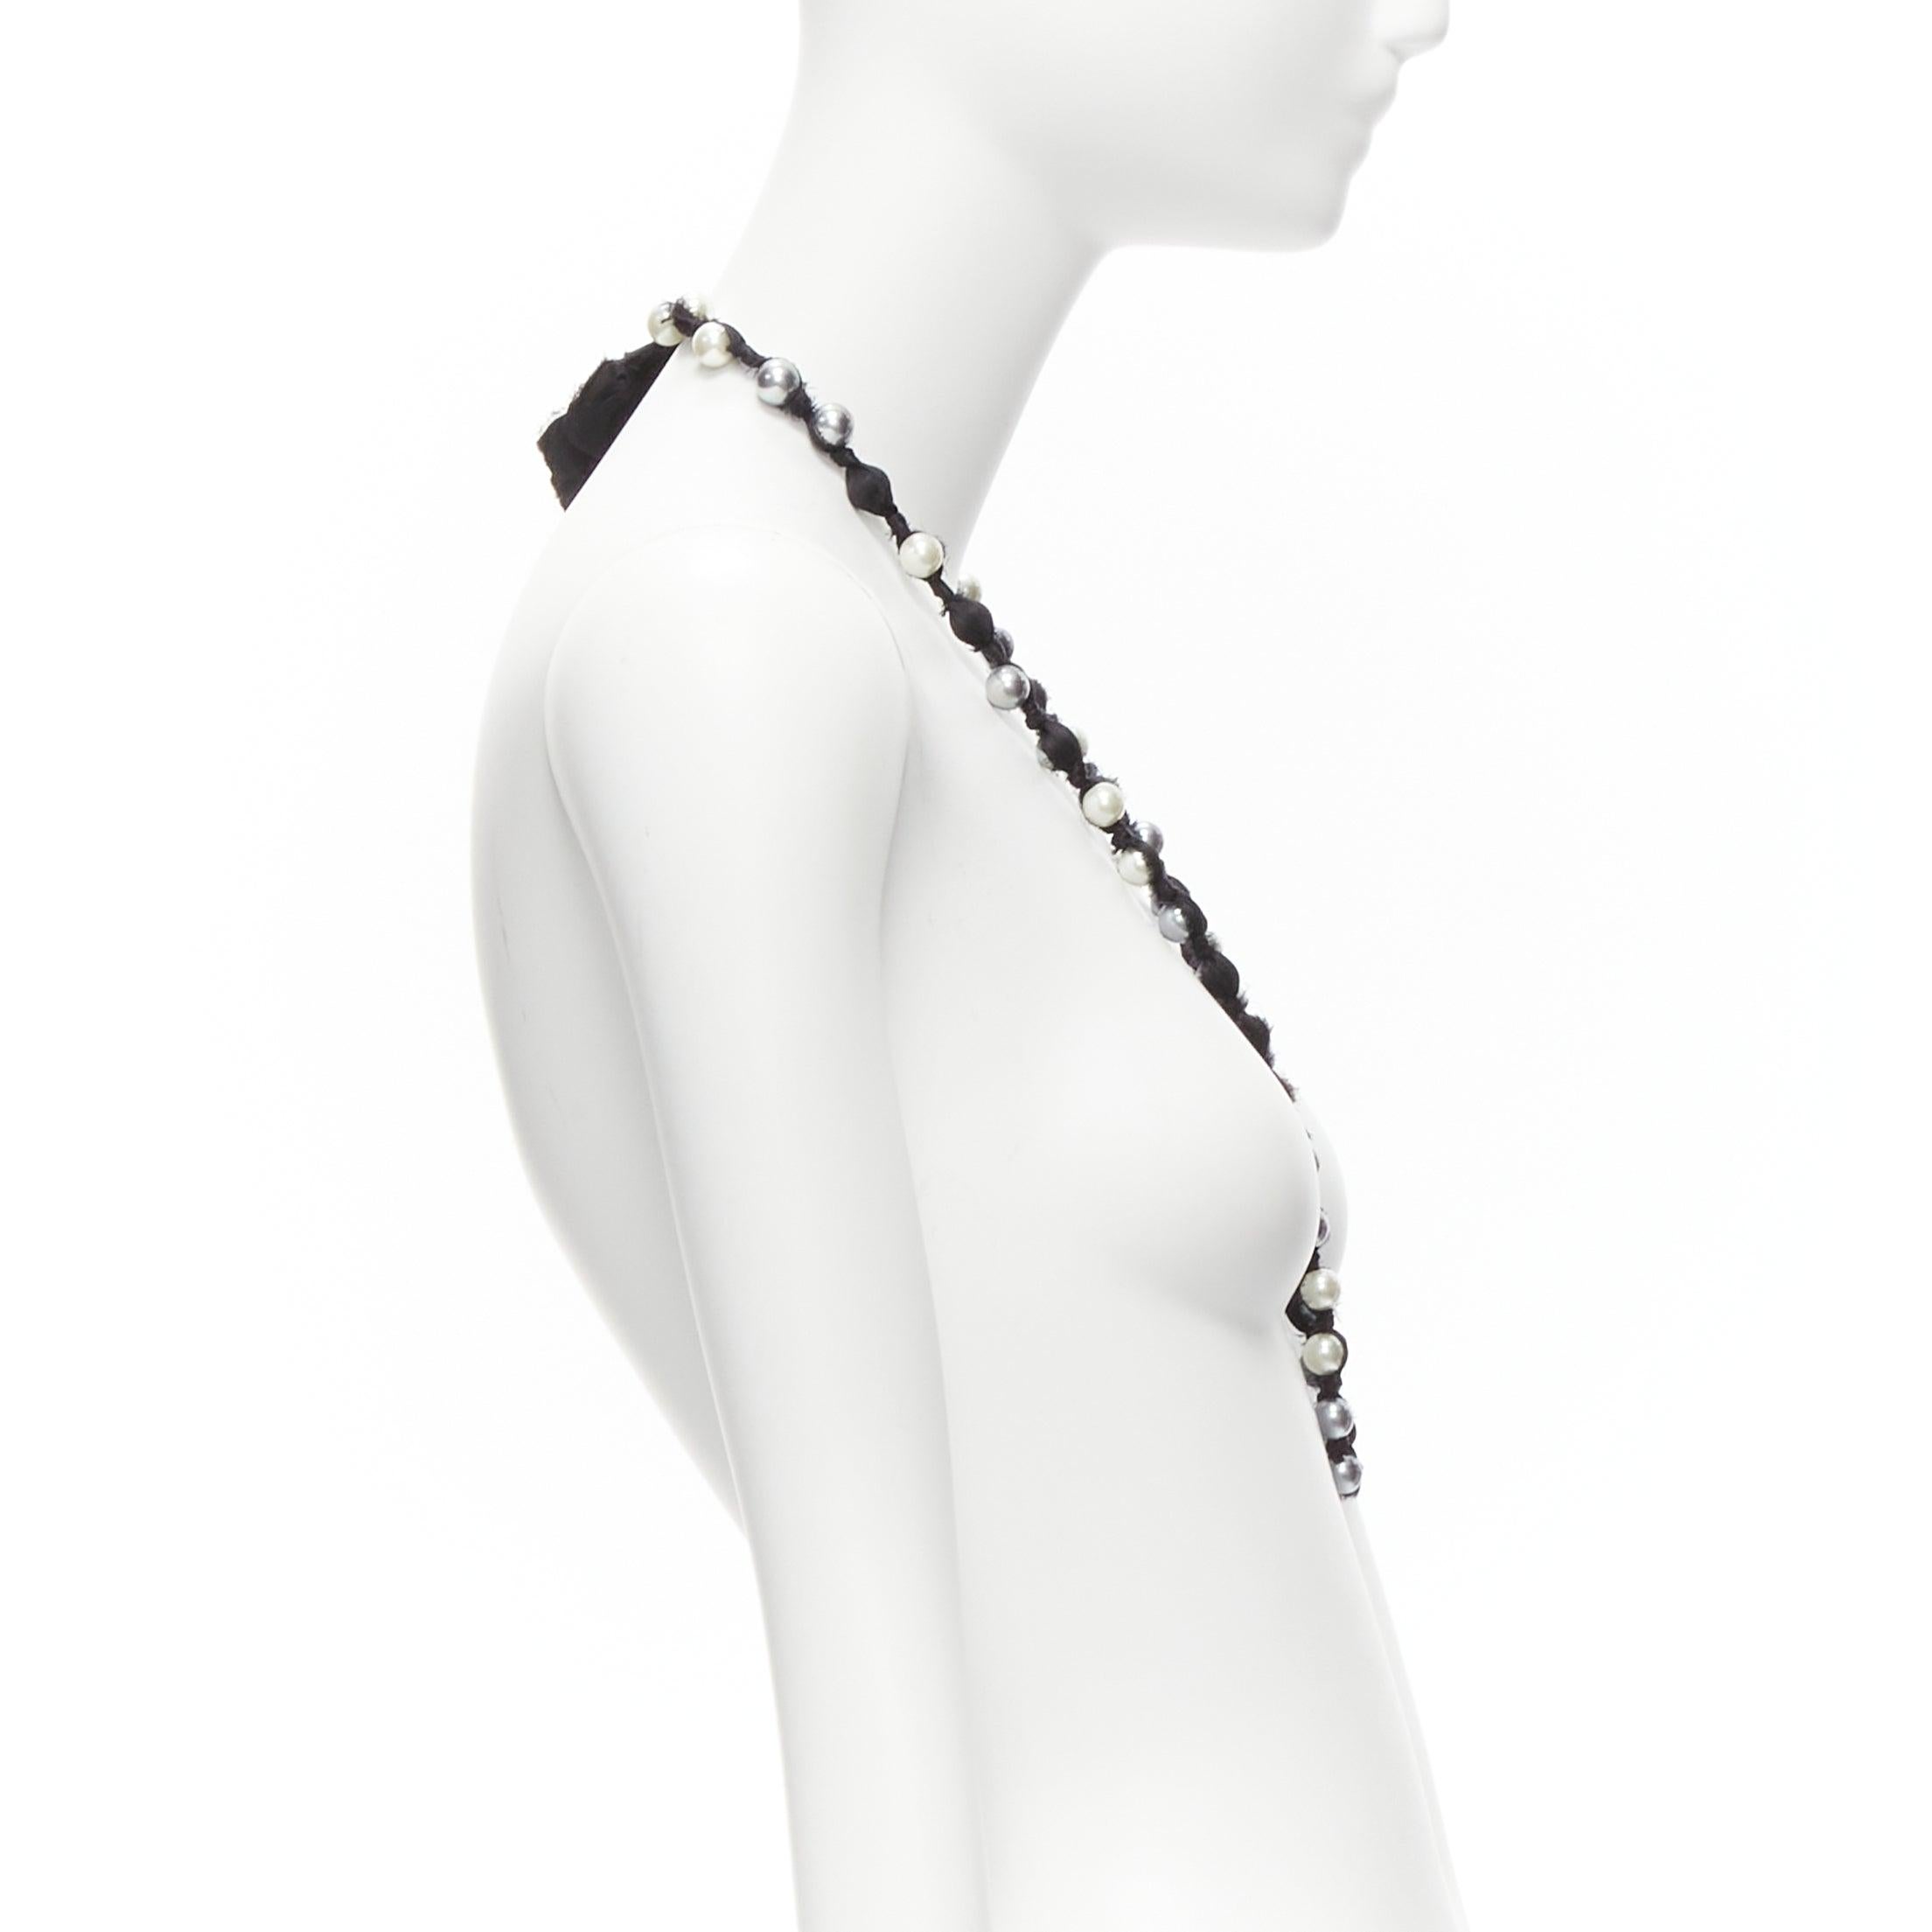 LANVIN ALBER ELBAZ, long collier enveloppé de rubans de soie de perles noires, anthracite crème et noire Pour femmes en vente